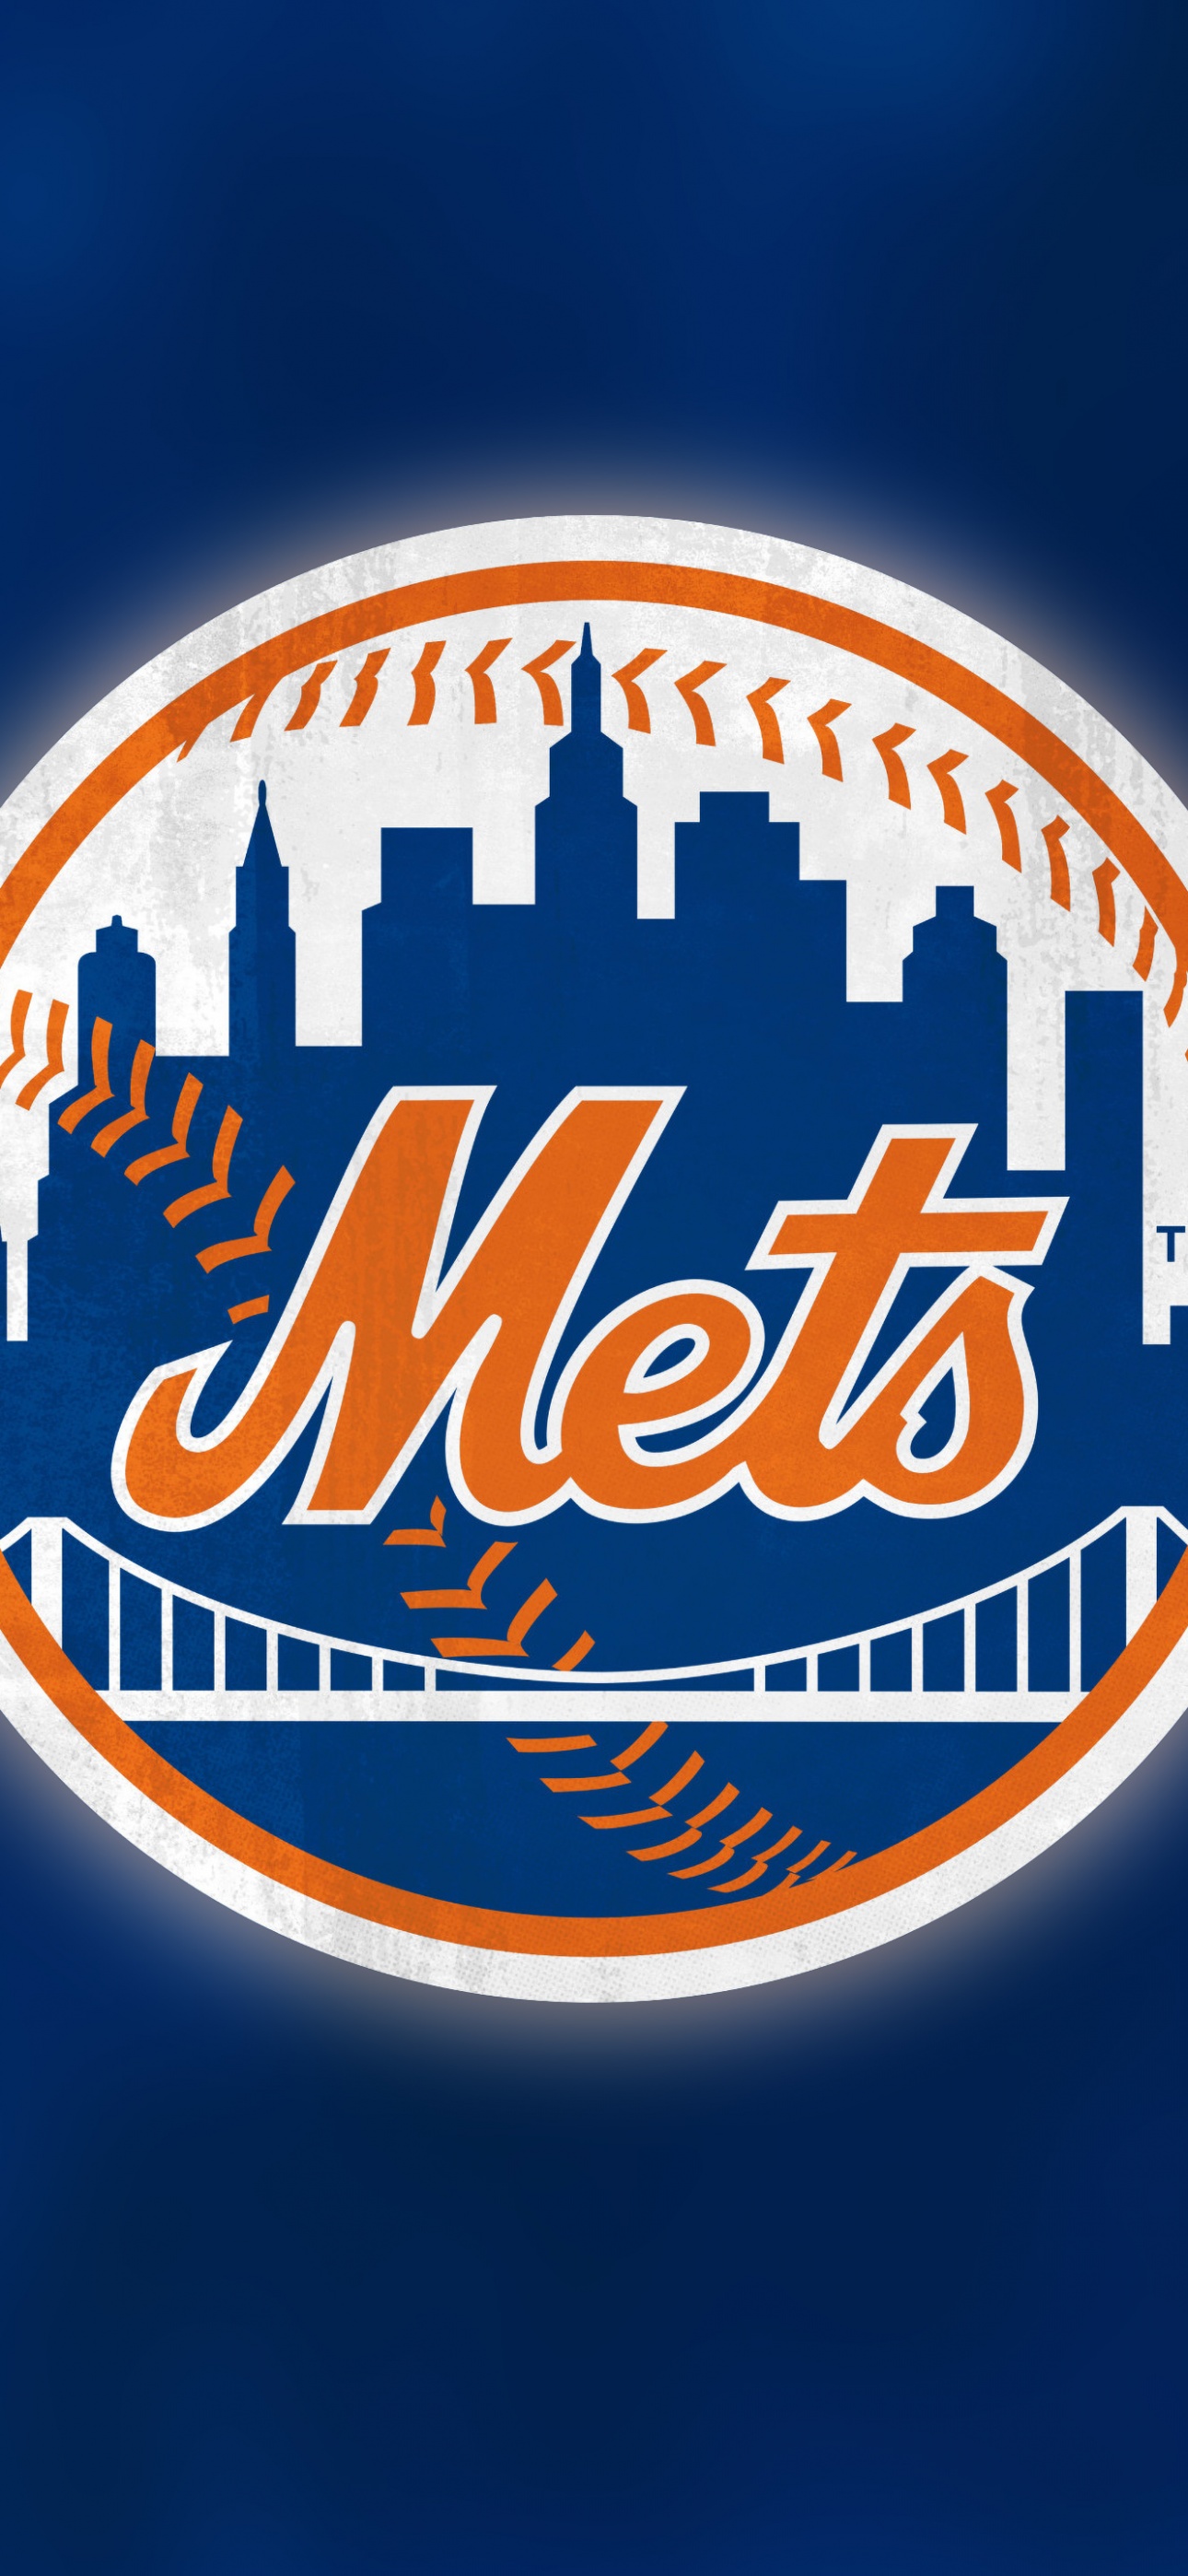 New York Mets Wallpaper 4K, Baseball team